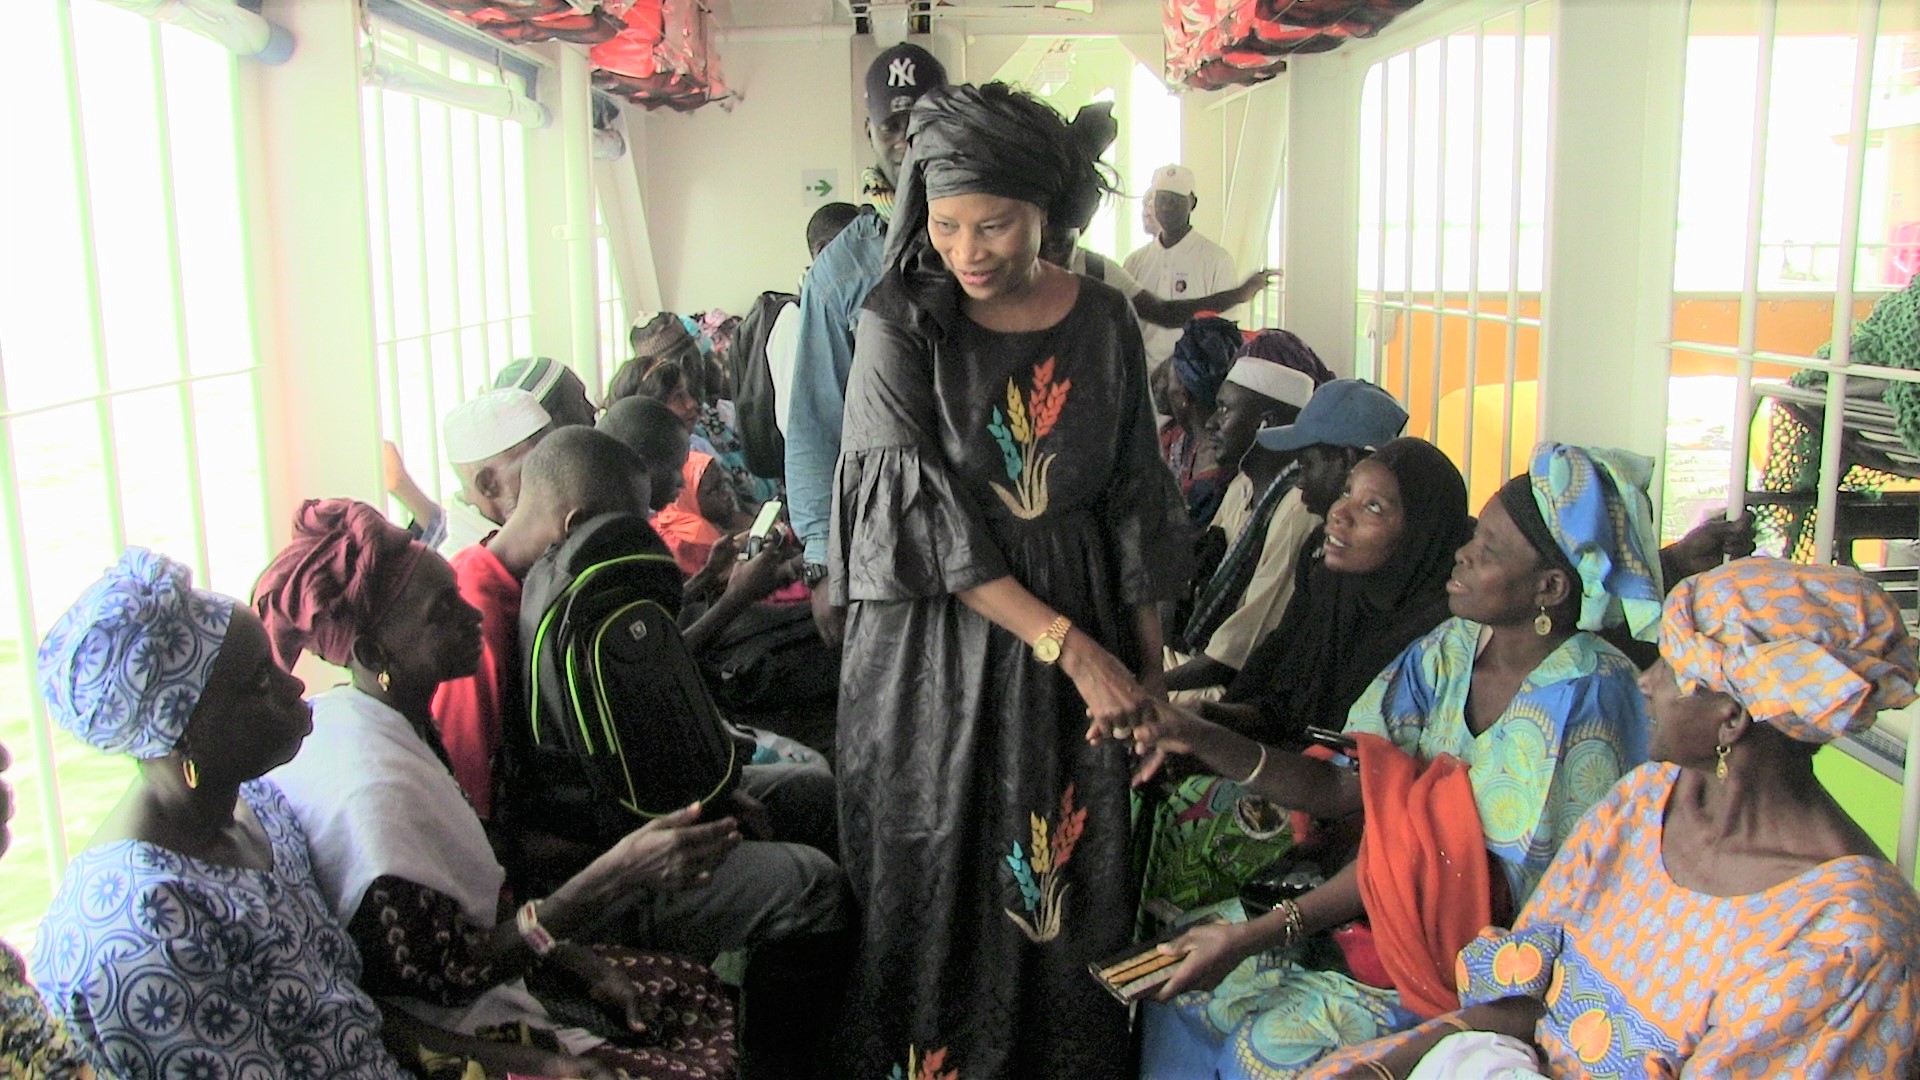 Arrêt sur image: Avant la traversée du ferry gambien, Me Aissata Tall Sall a salué la présence de la MICEGA, les soldats de la CEDEAO, en Gambie